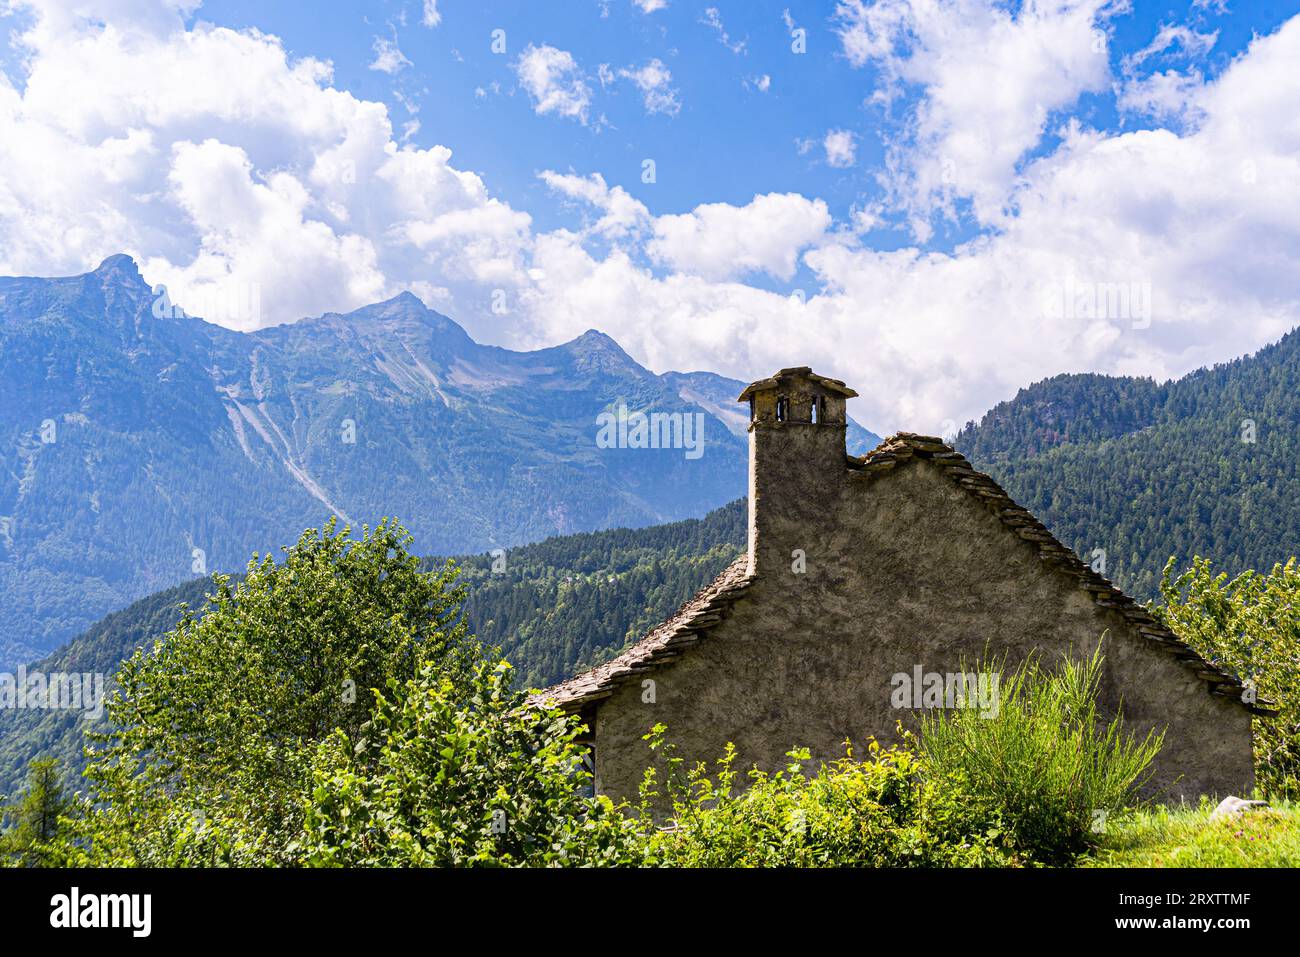 Ein traditionelles Haus im ländlichen Stil gebaut aus Felsen vom Berg in einem wunderschönen Alpental im Sommer, Piemont (Piemont) Stockfoto